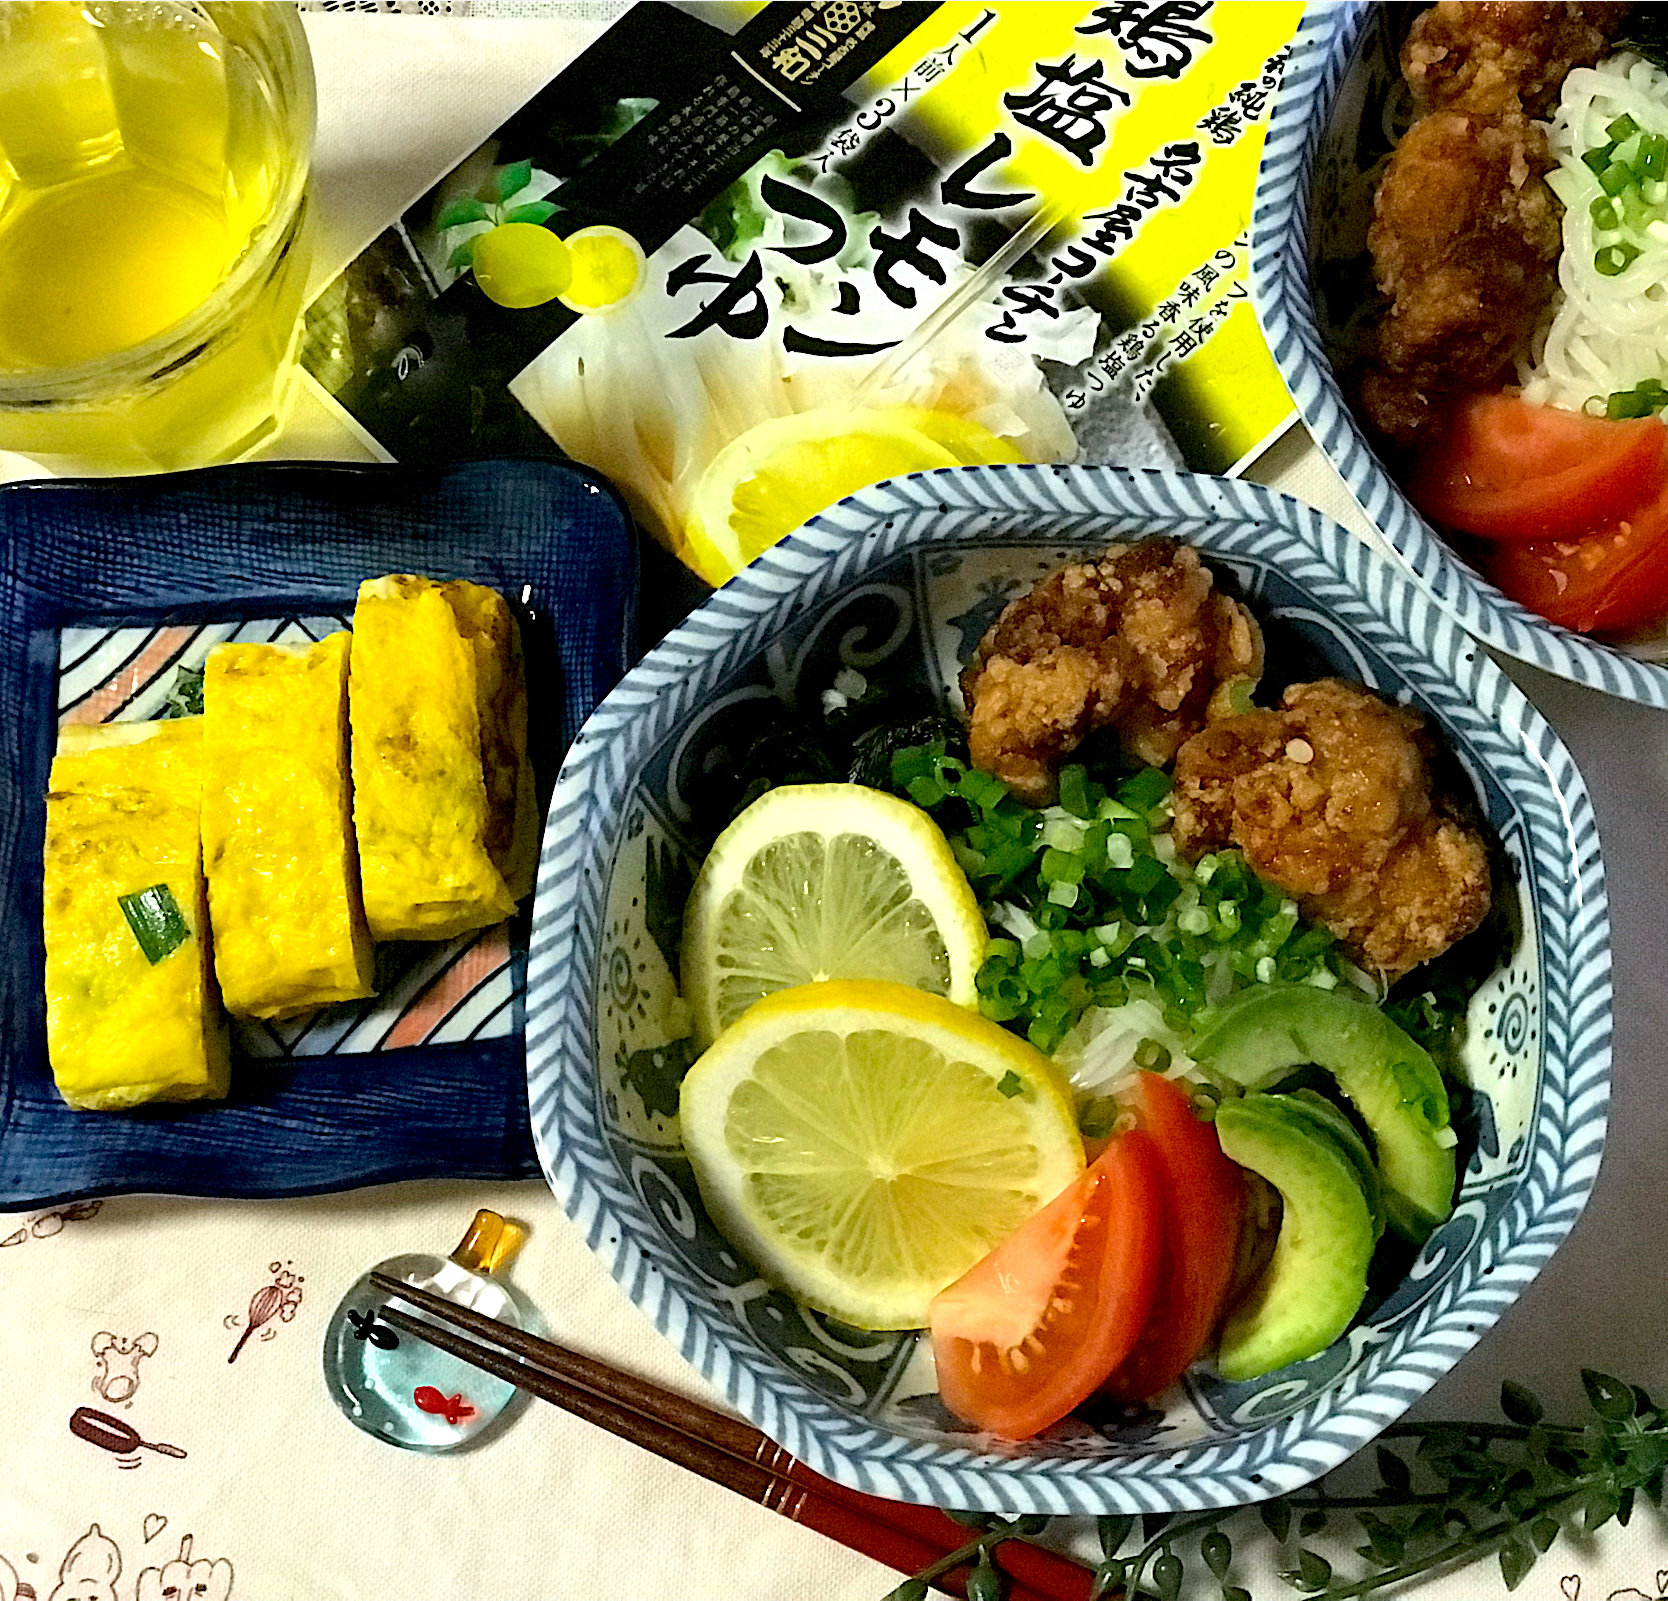 名古屋からの贈り物🎁名古屋コーチンさっぱりレモンつけ麺🍋爽やか〰